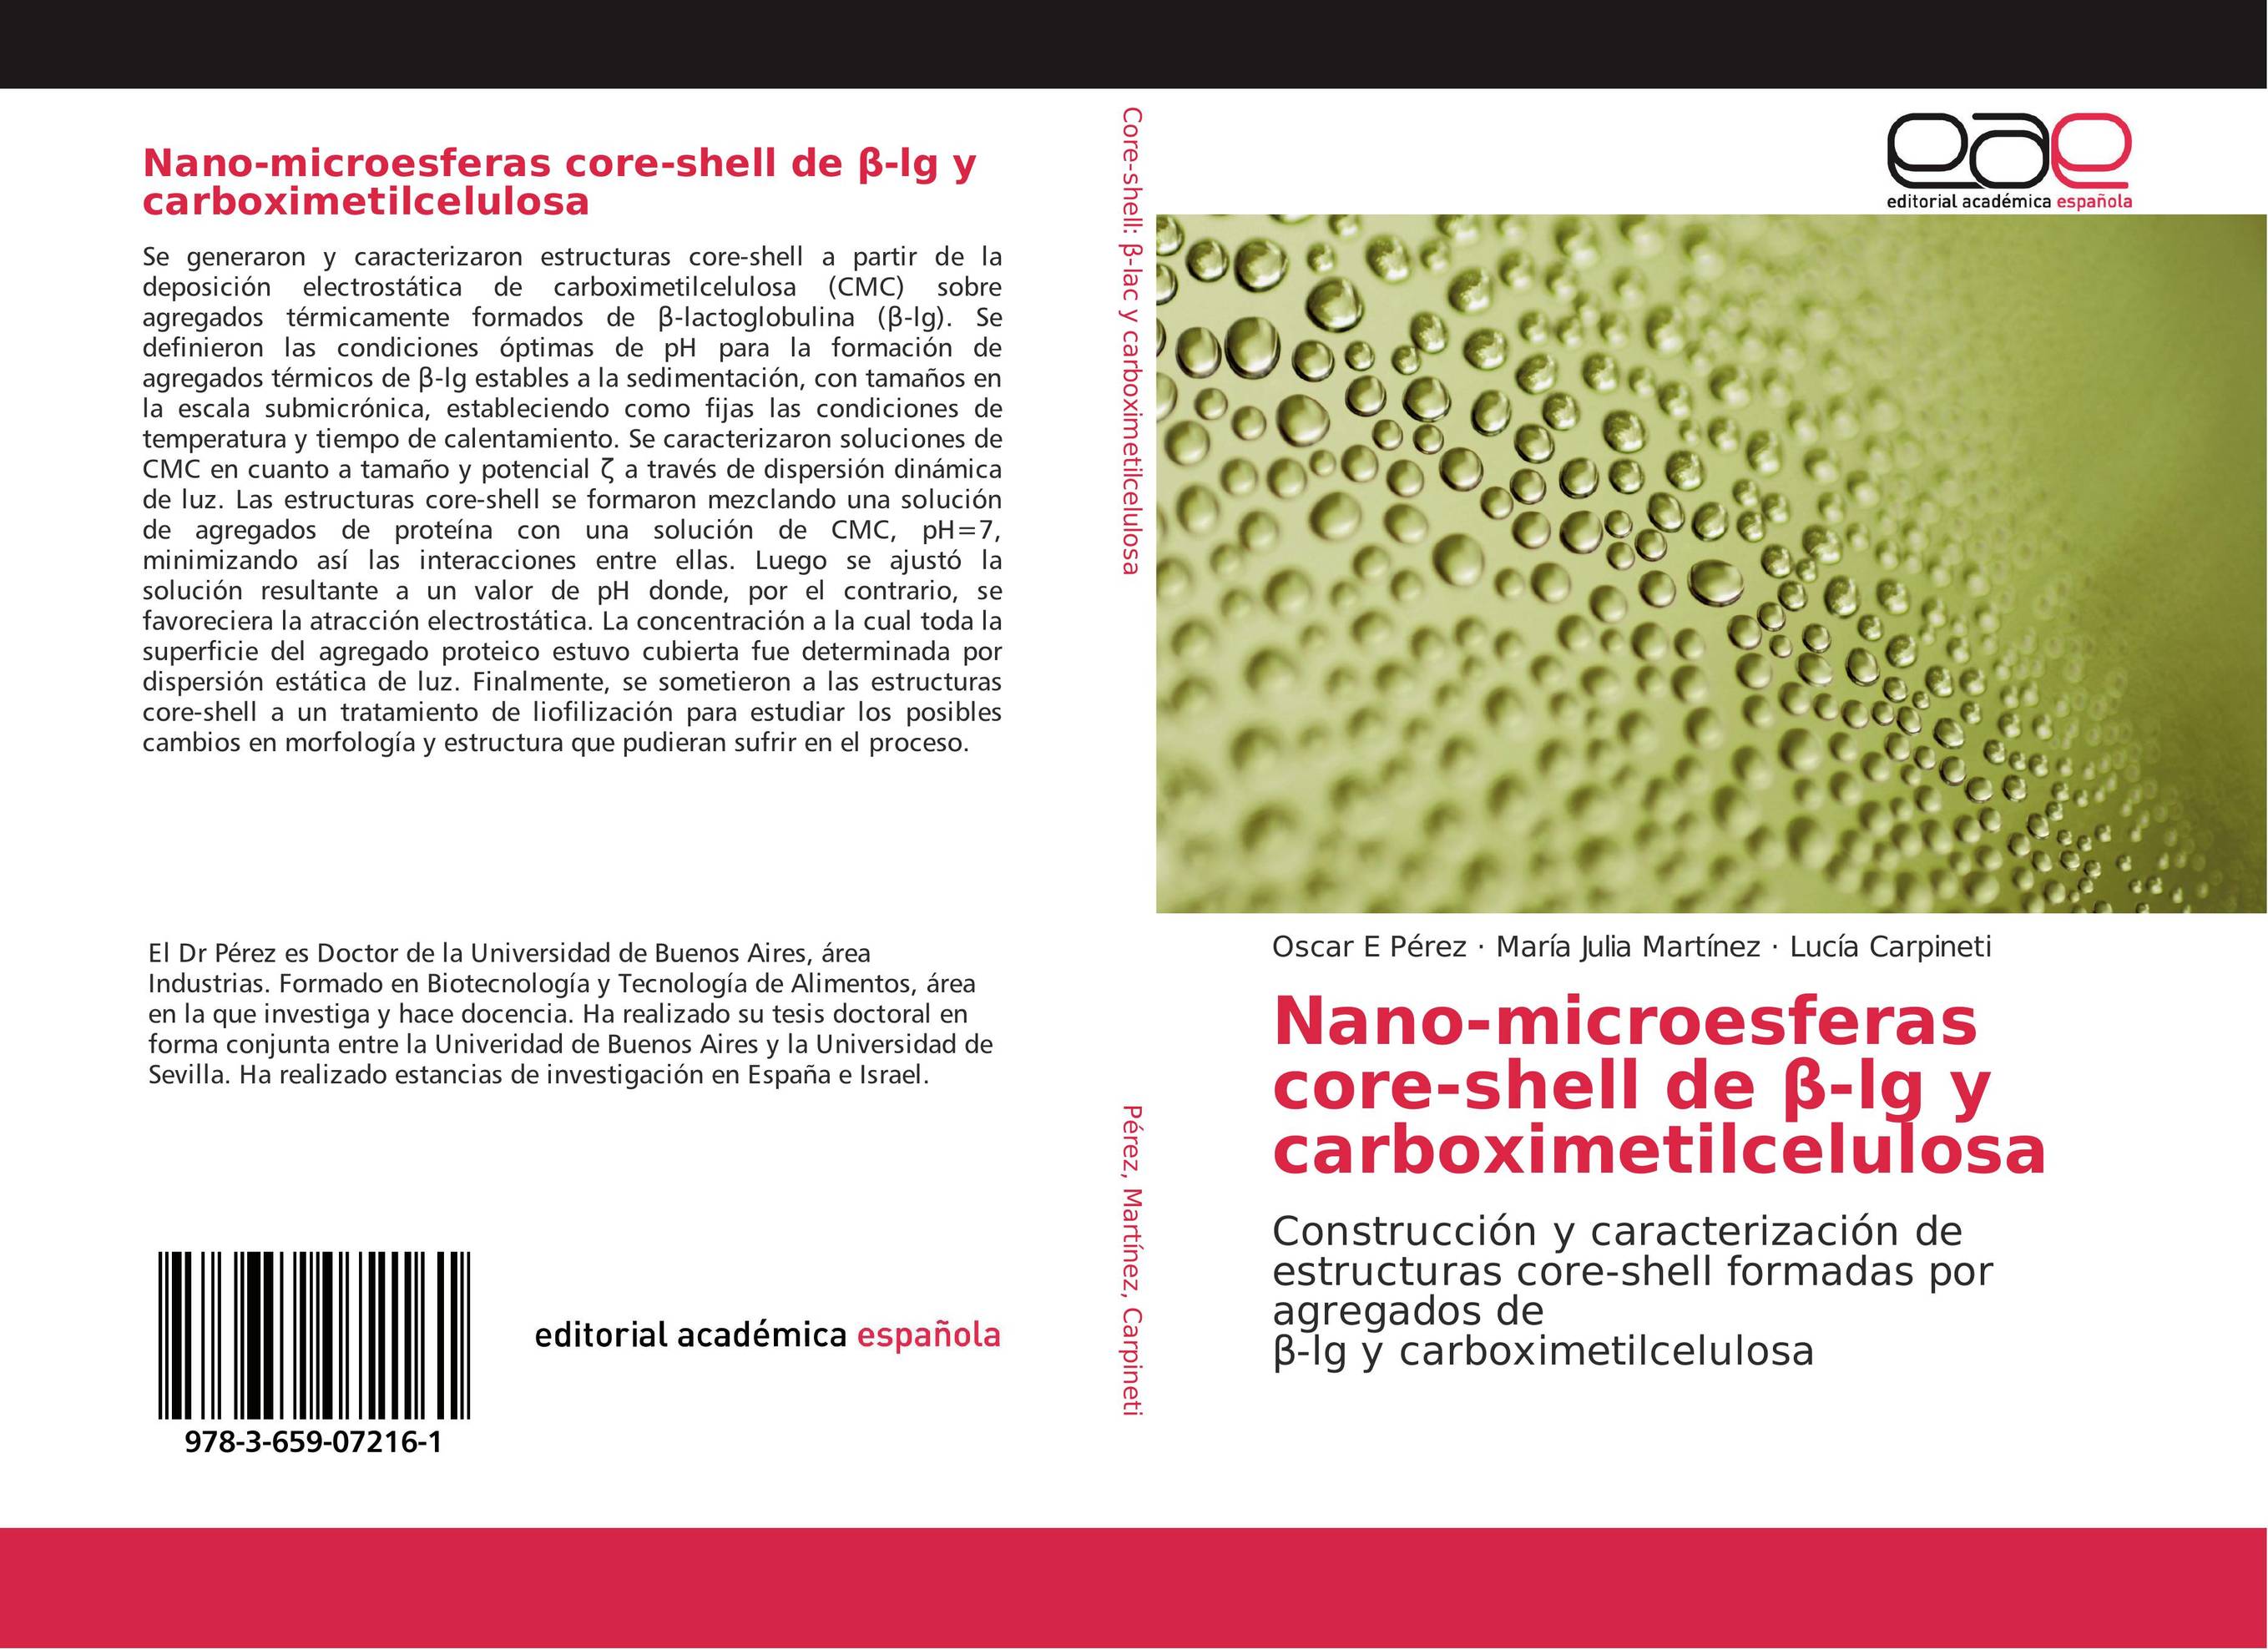 Nano-microesferas core-shell de ?-lg y carboximetilcelulosa